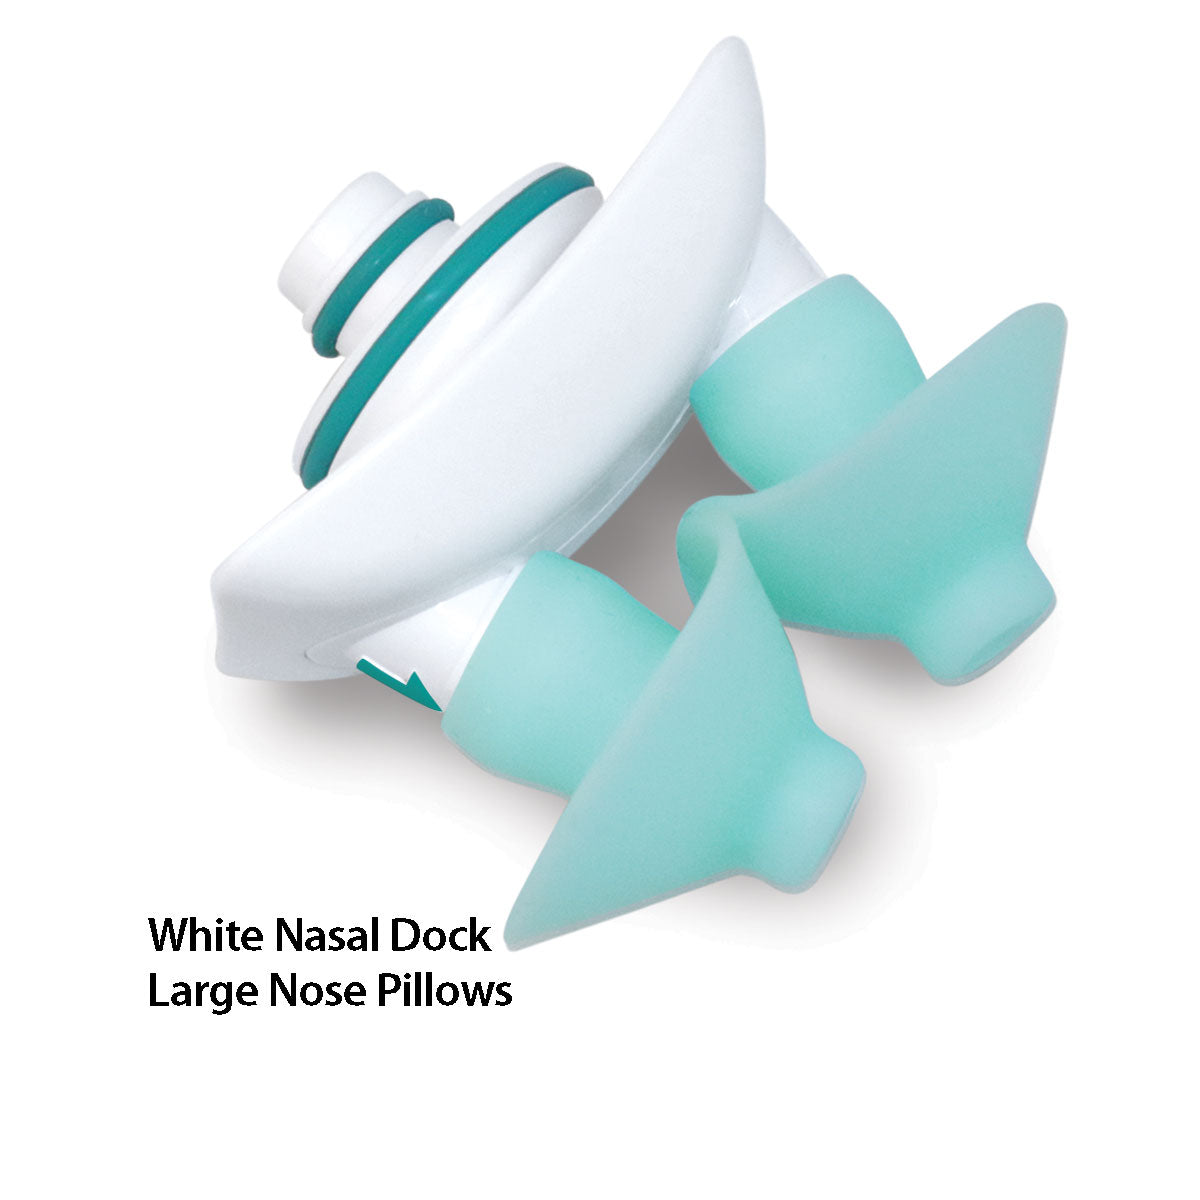 Nose Pillow-Nasal Dock Combos